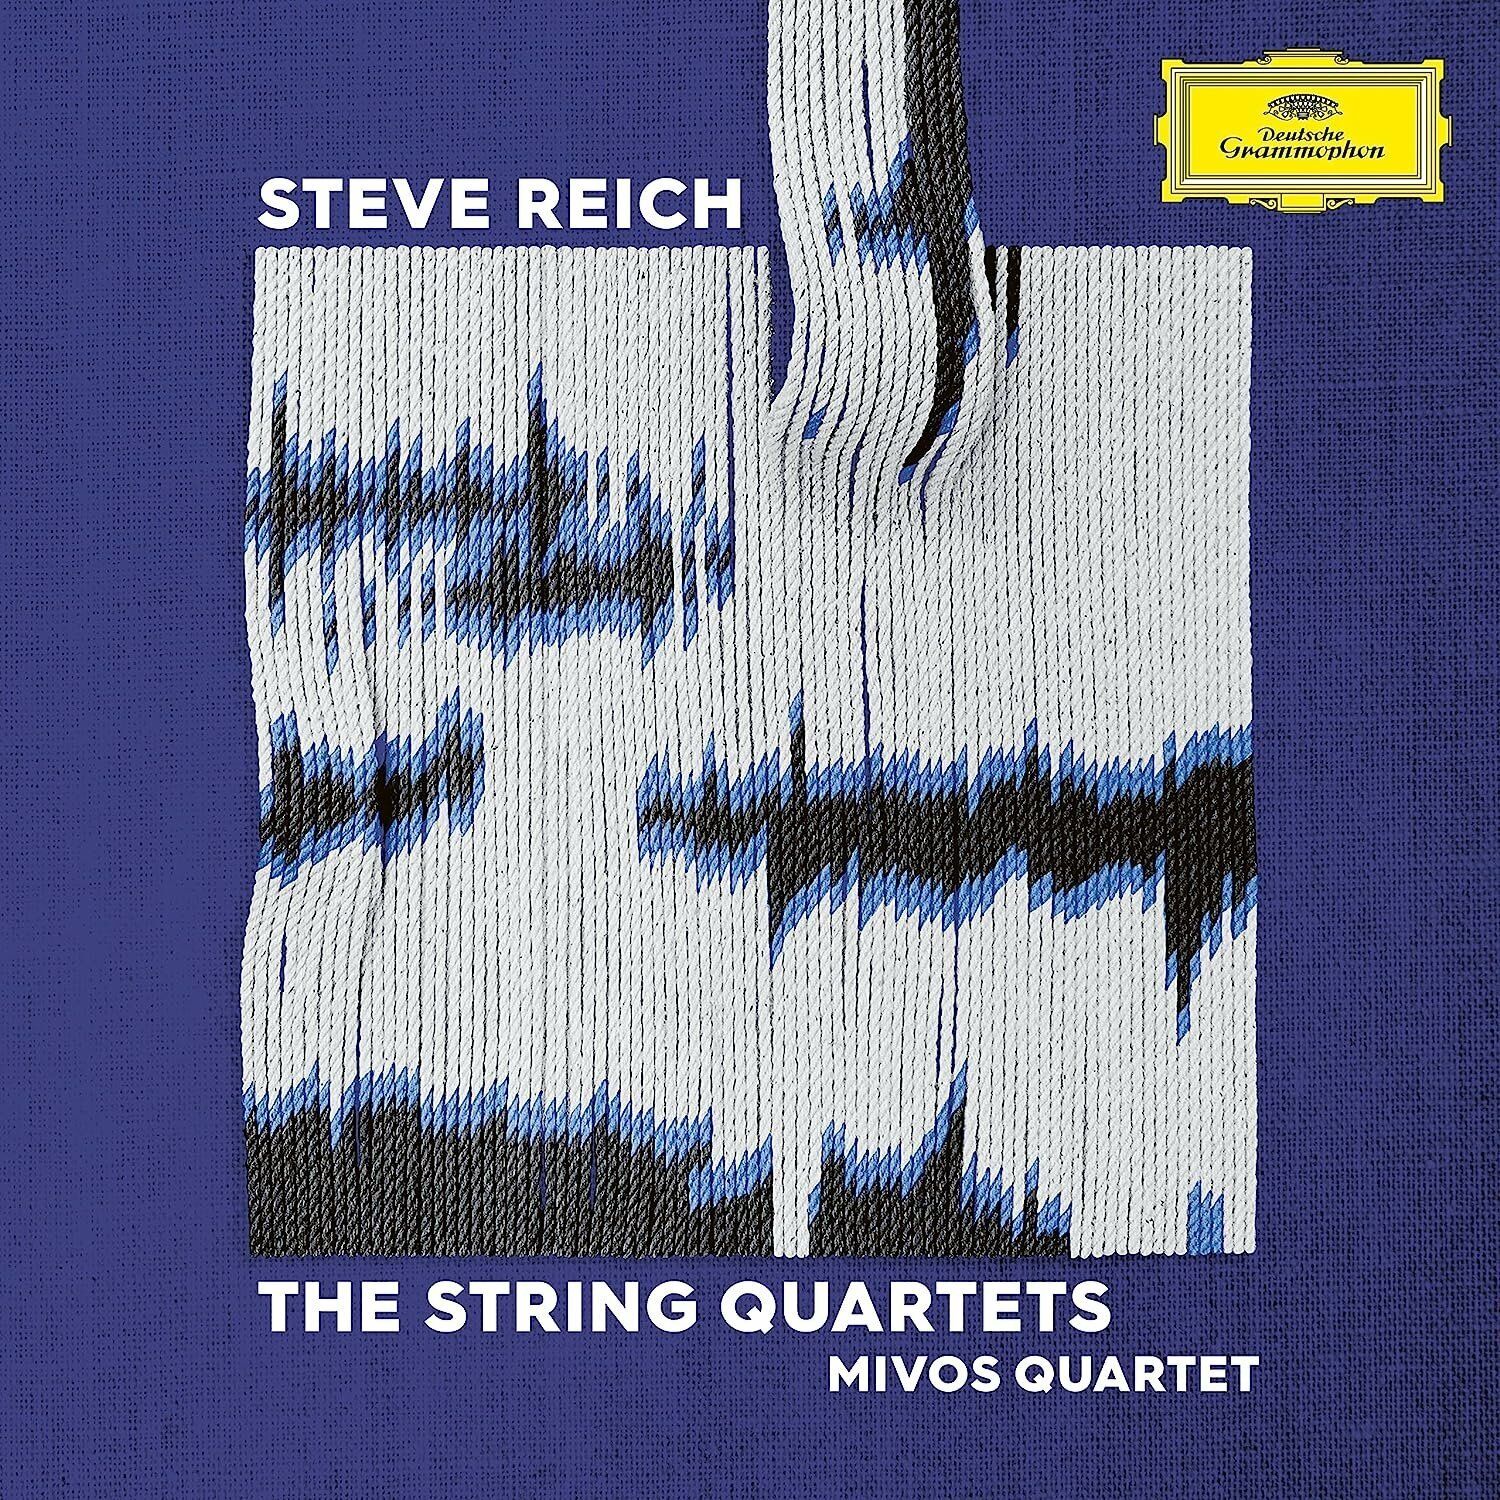 0028948633869, Виниловая пластинка Mivos Quartet, Reich: The String Quartets виниловая пластинка sacred reich awakening